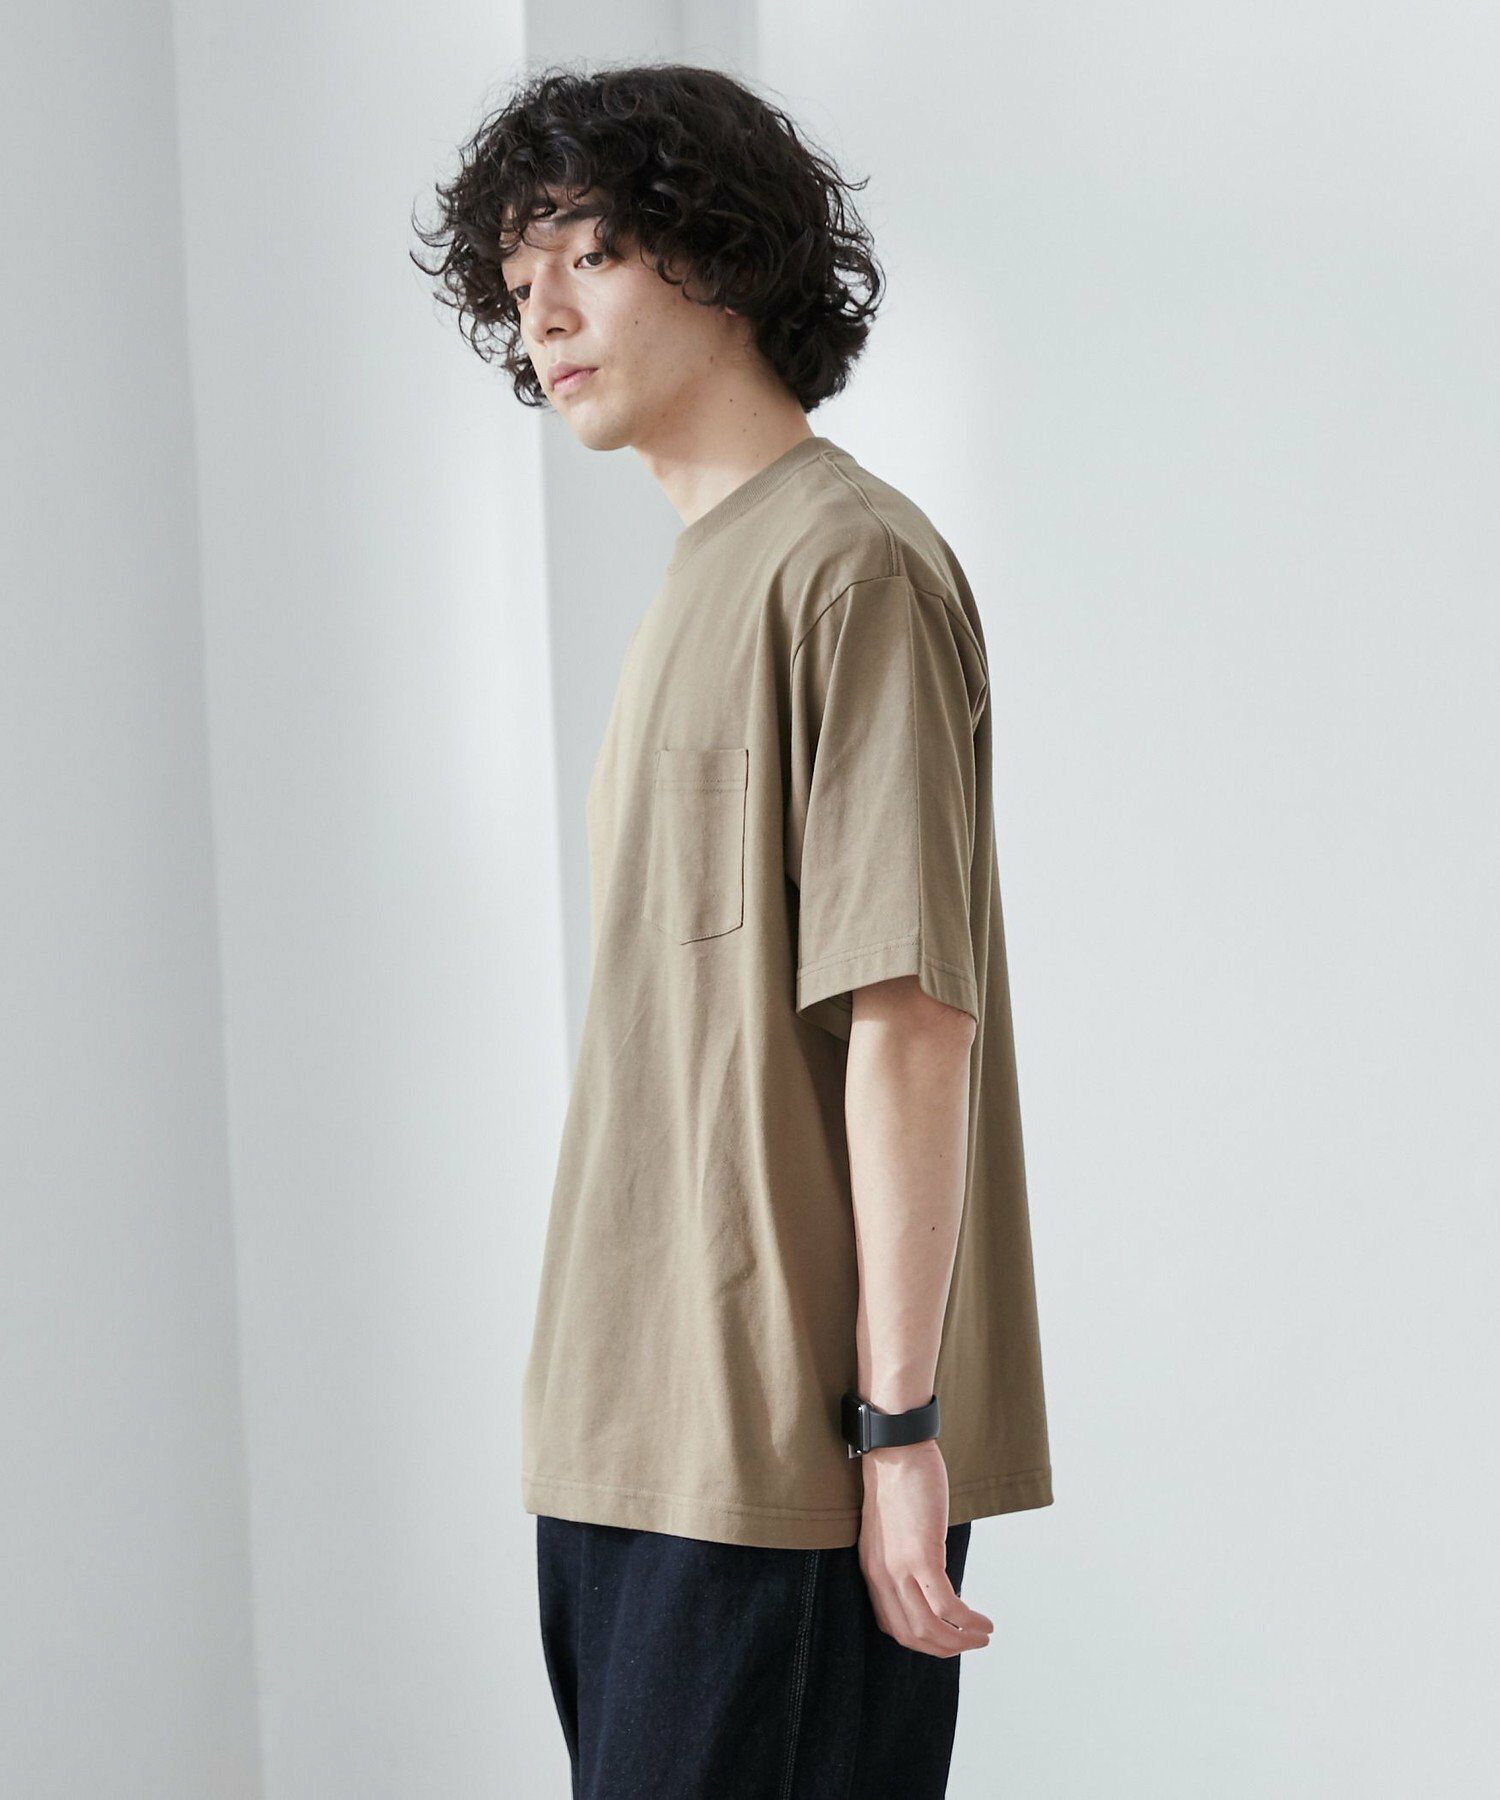 【WELLTECT】ベーシックポケットTシャツ(WEB限定カラー)